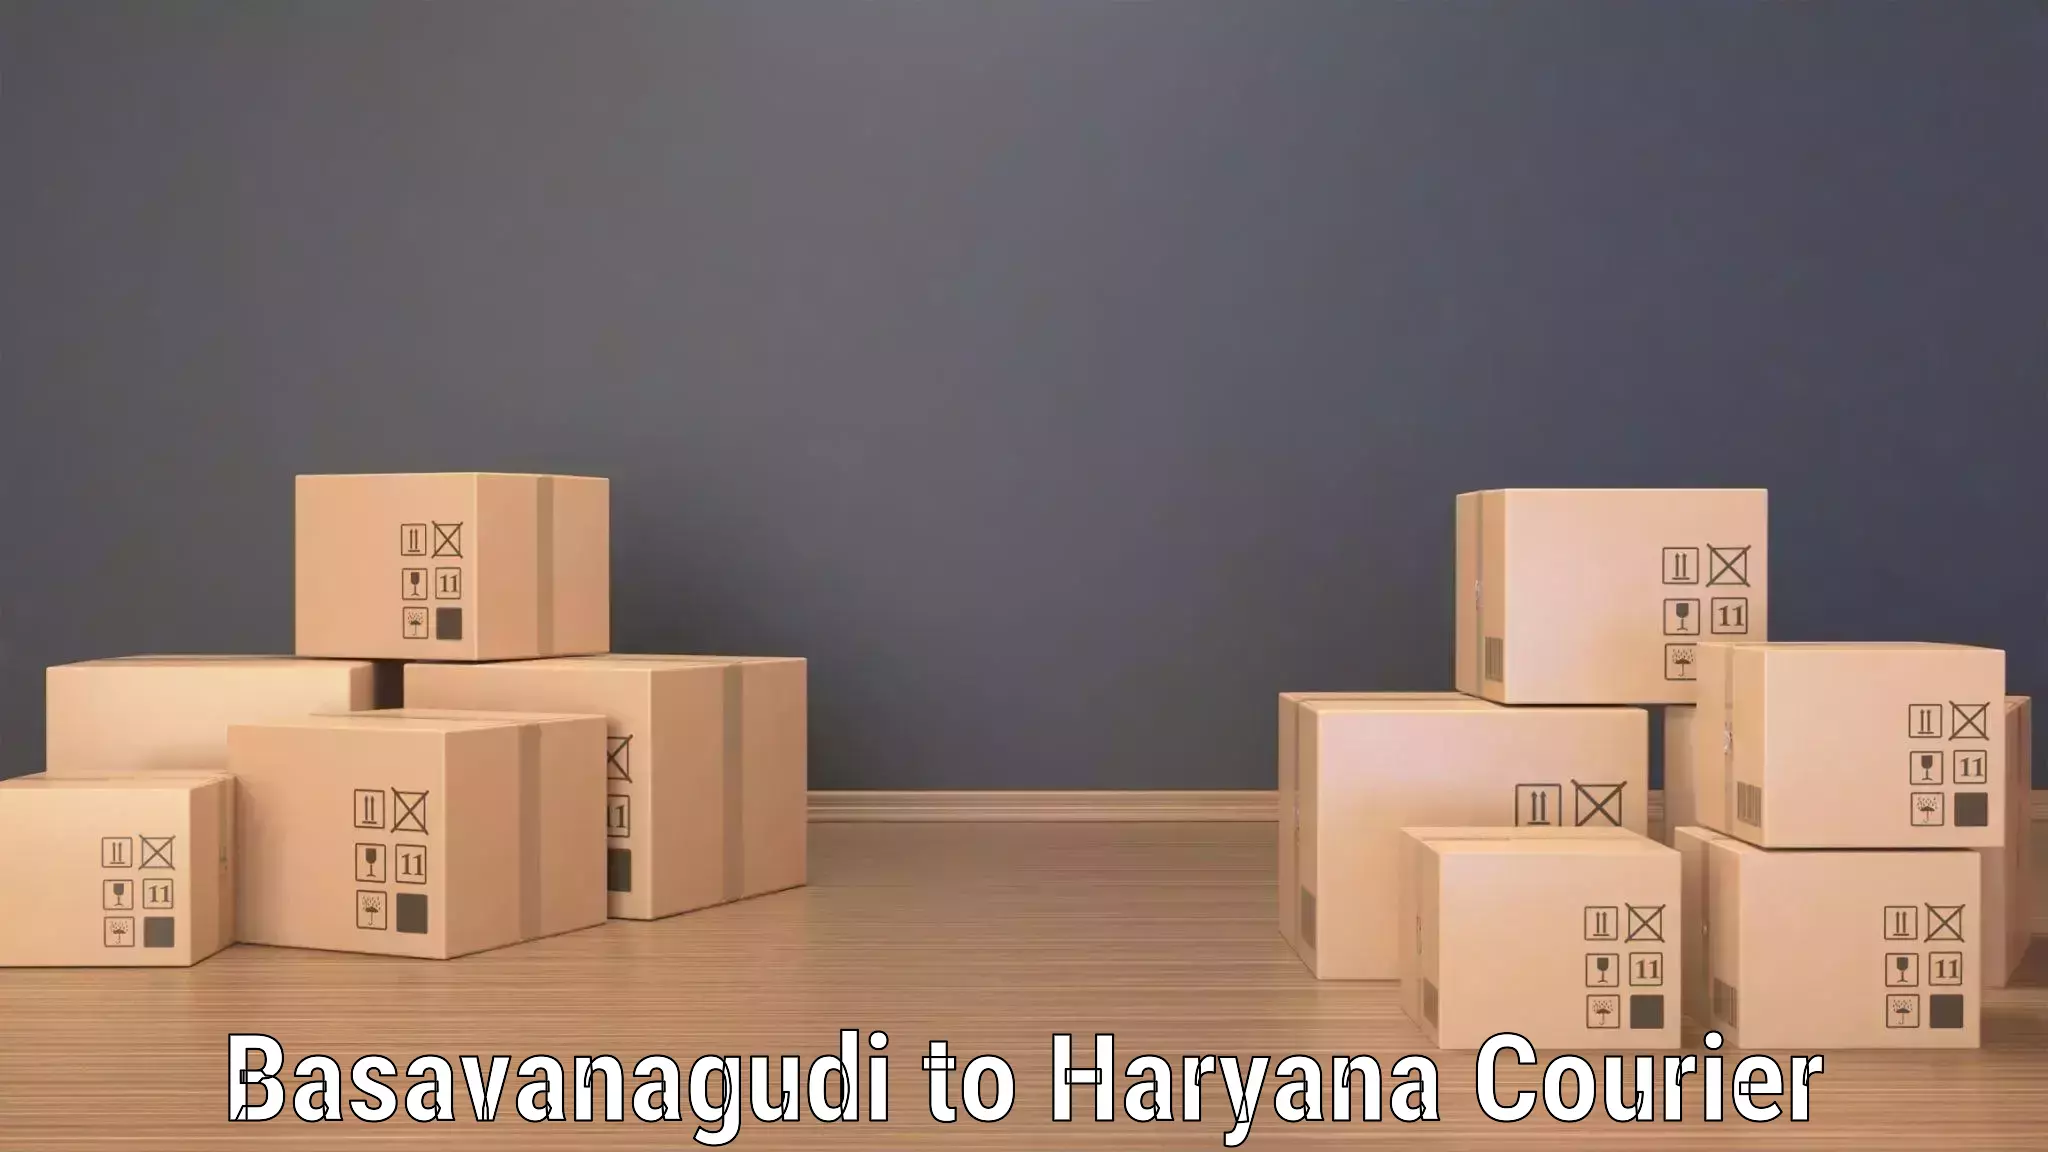 Online package tracking in Basavanagudi to NCR Haryana